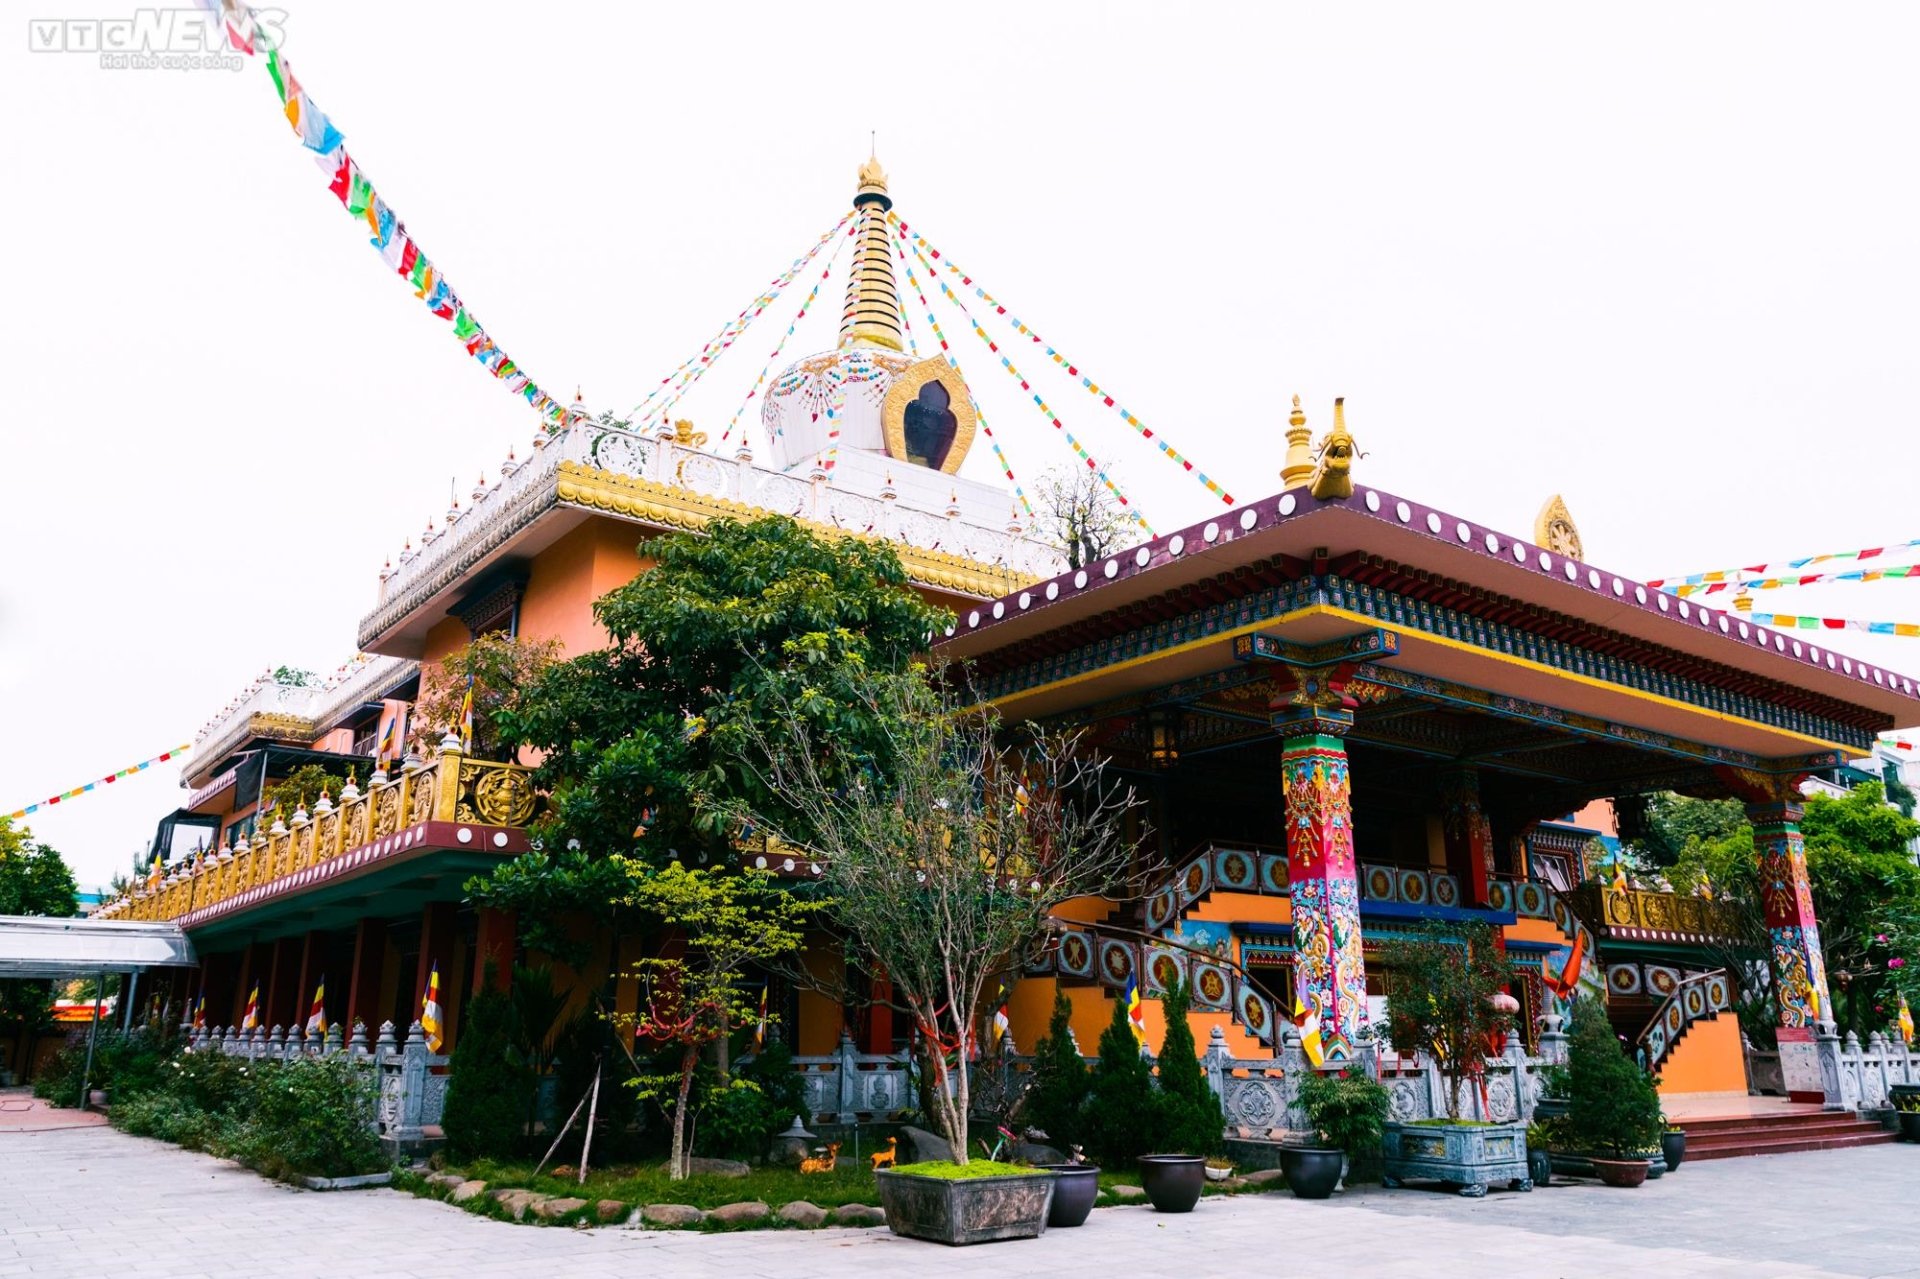 Chiêm ngưỡng ngôi chùa Tây Tạng 600 năm tuổi độc nhất tại Hà Nội - 1